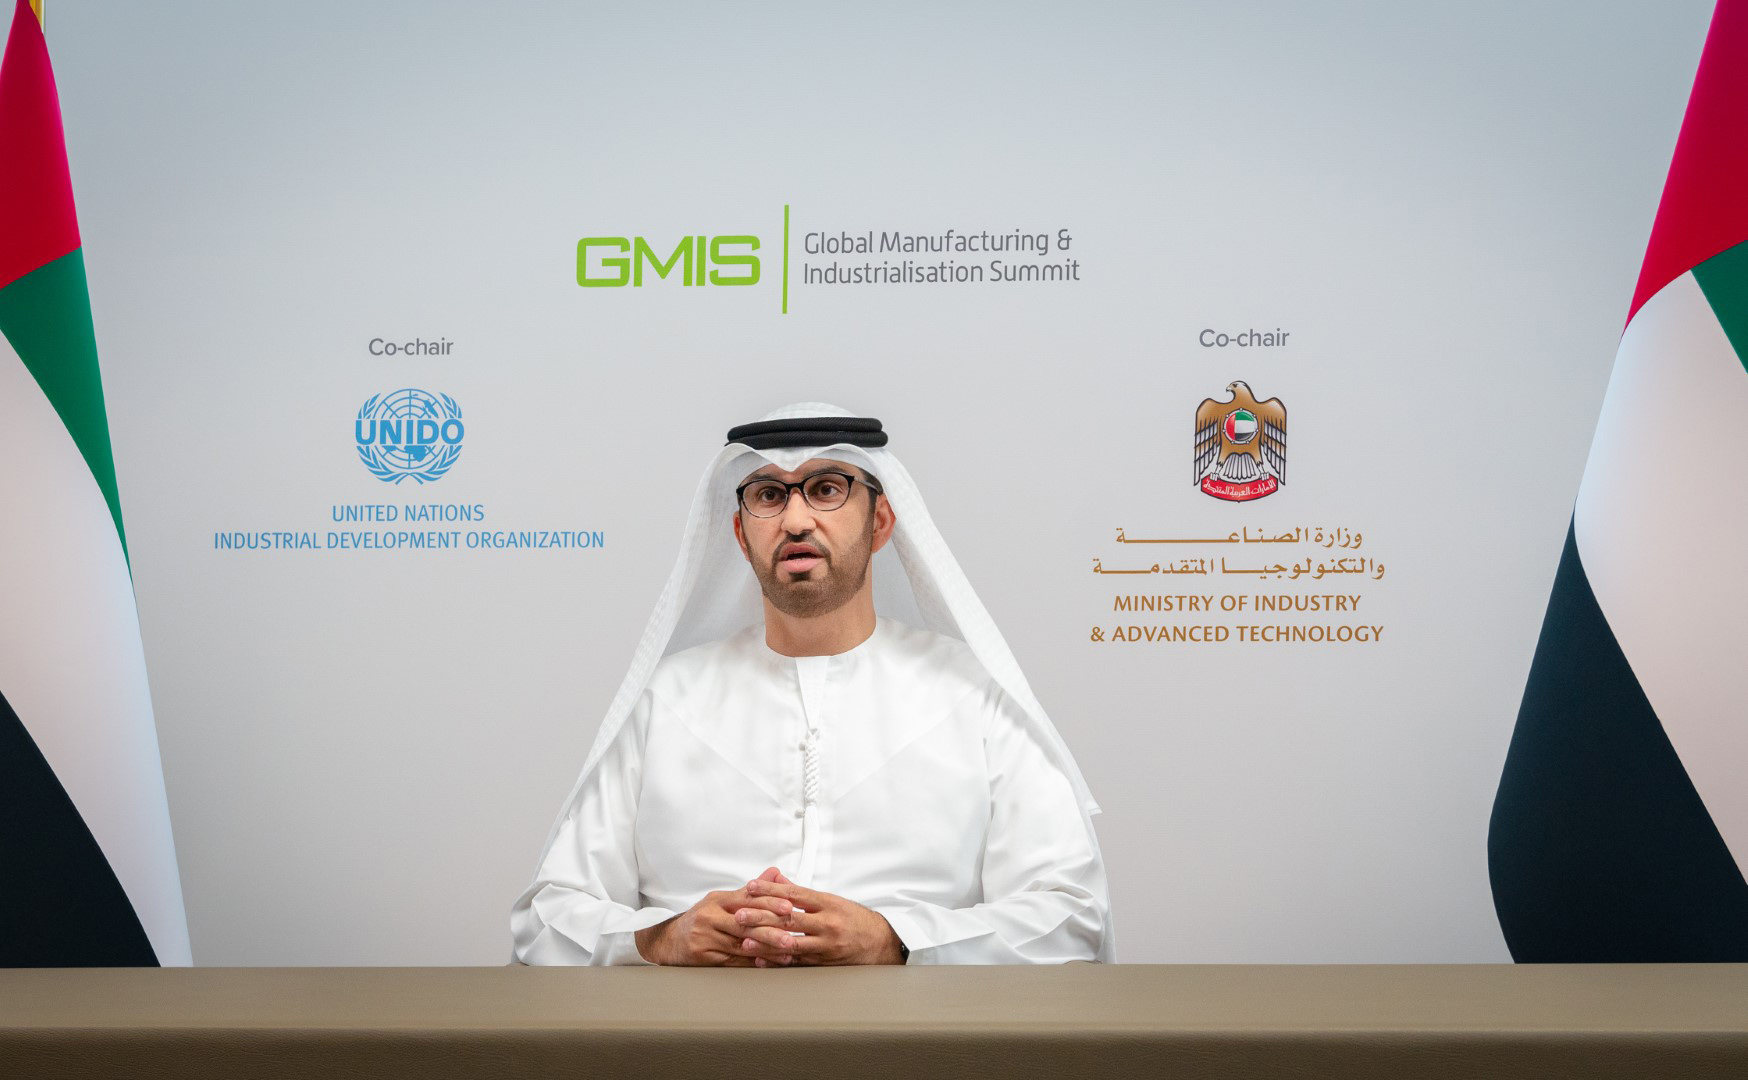 خلال كلمة الإمارات في الدورة الثالثة للقمة العالمية للصناعة والتصنيع د سلطان الجابر نعمل على إرساء ركائز اقتصاد قائم على المعرفة وبناء منظومة تدعم خلق وظائف مستدامة